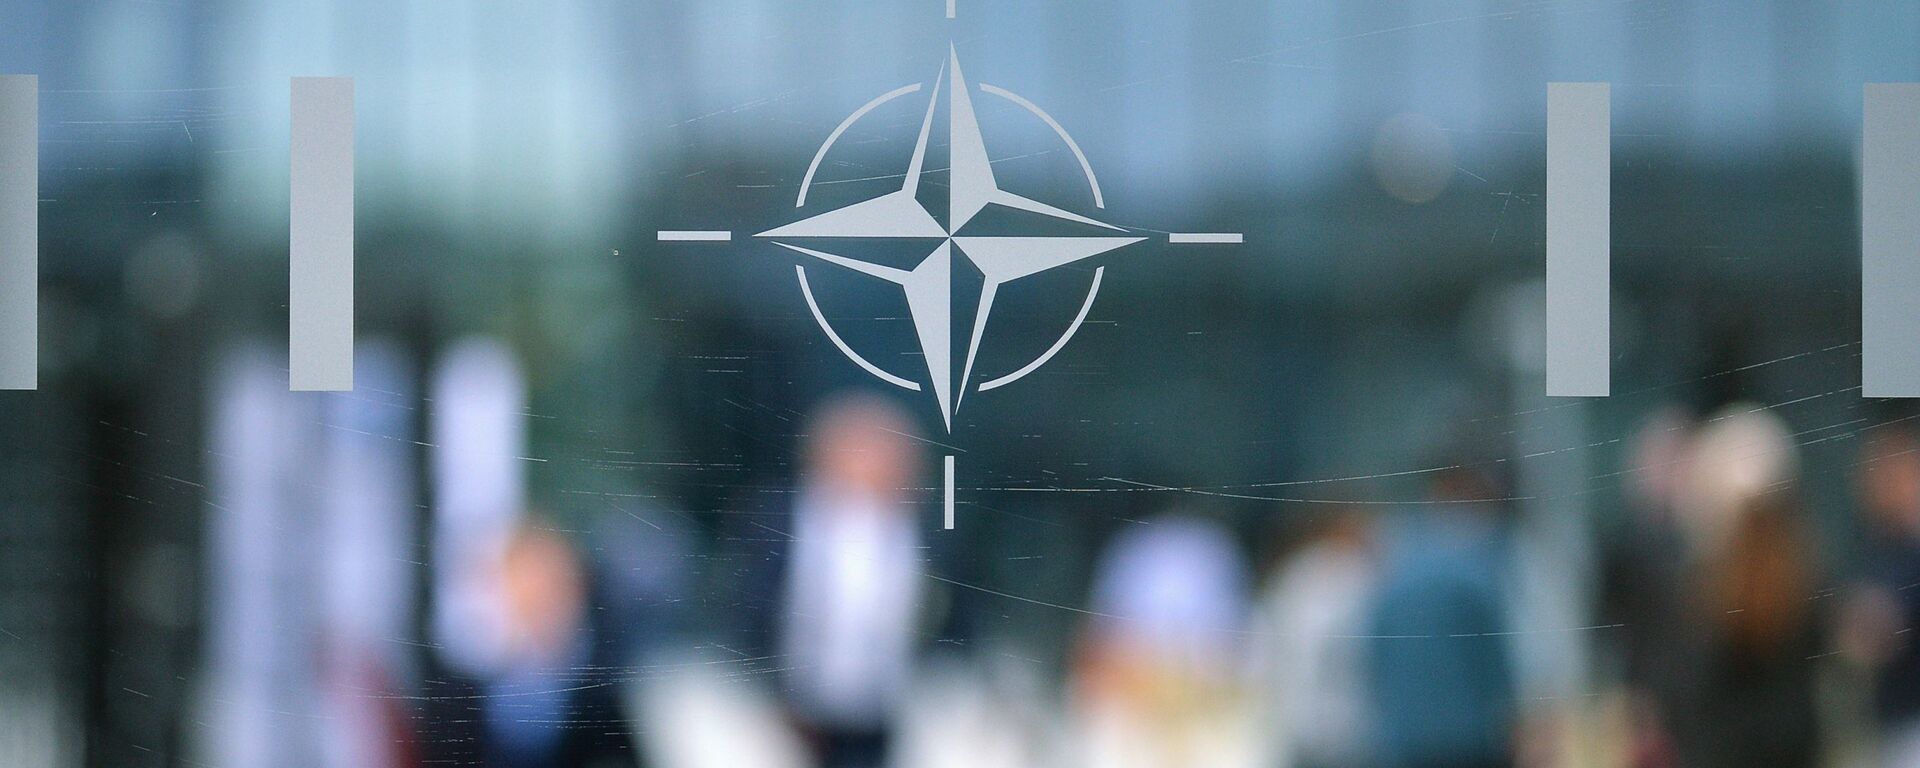 Эмблема Организации Североатлантического договора (НАТО) в Брюсселе.   - Sputnik Абхазия, 1920, 15.08.2021